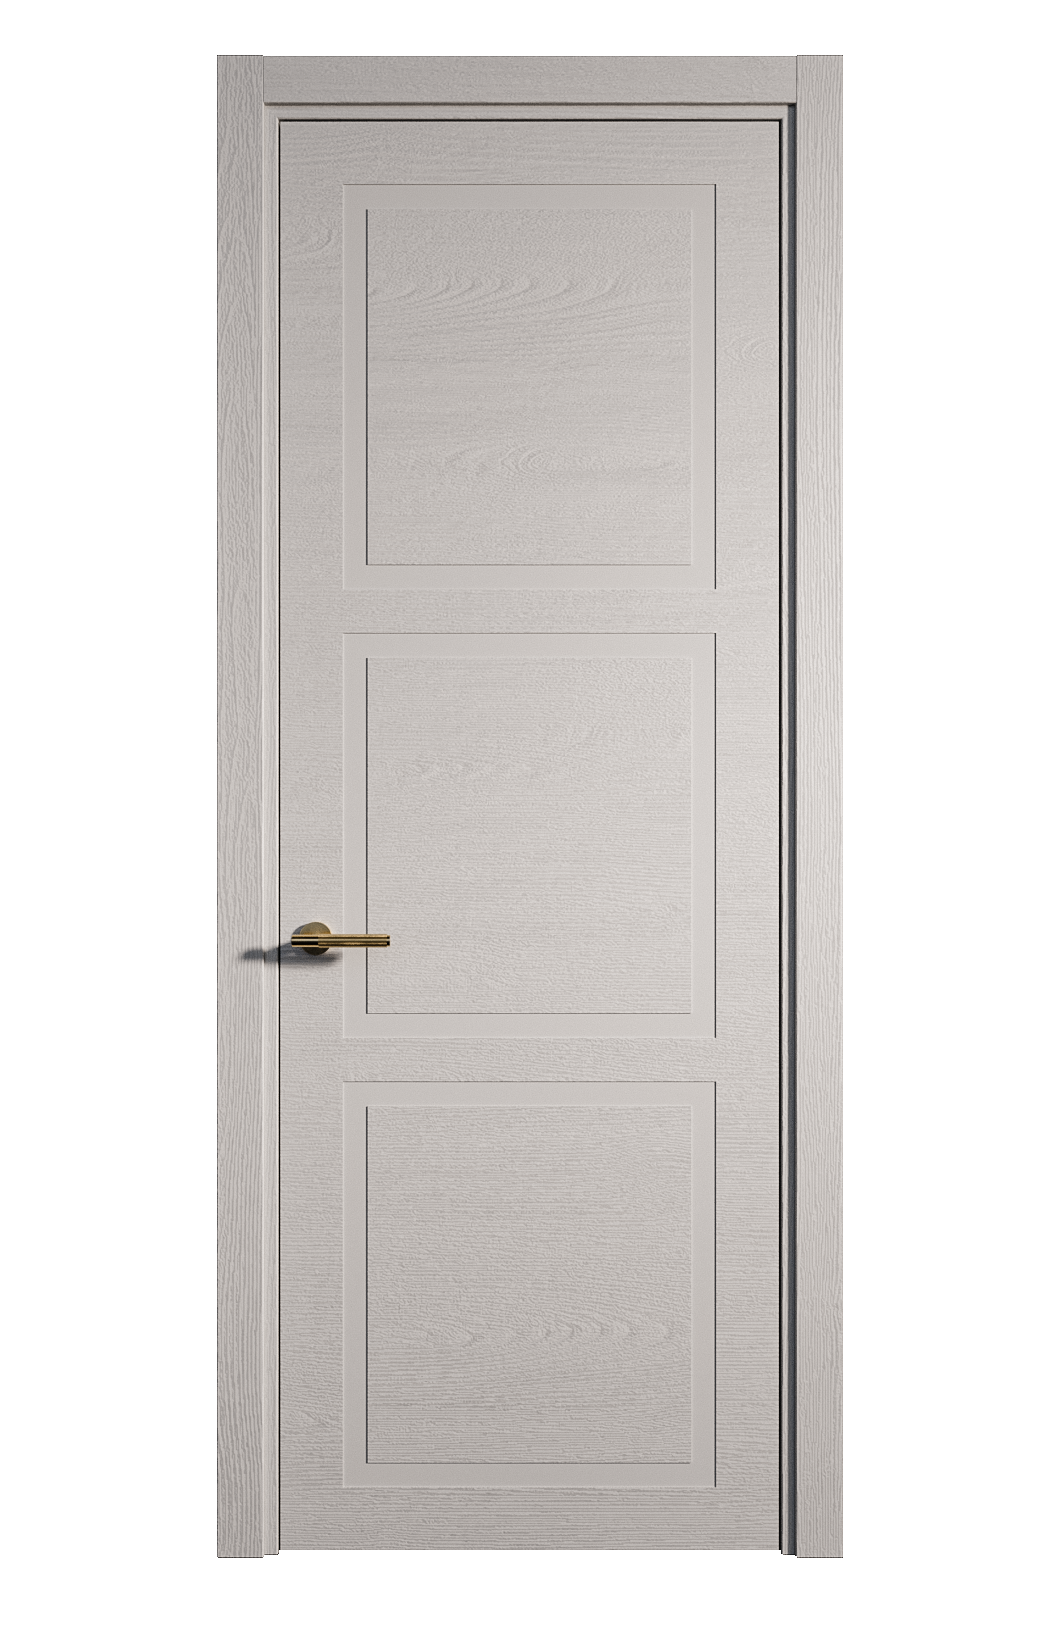 Межкомнатная дверь Бостон-3 глухая эмаль ral 7047 24472